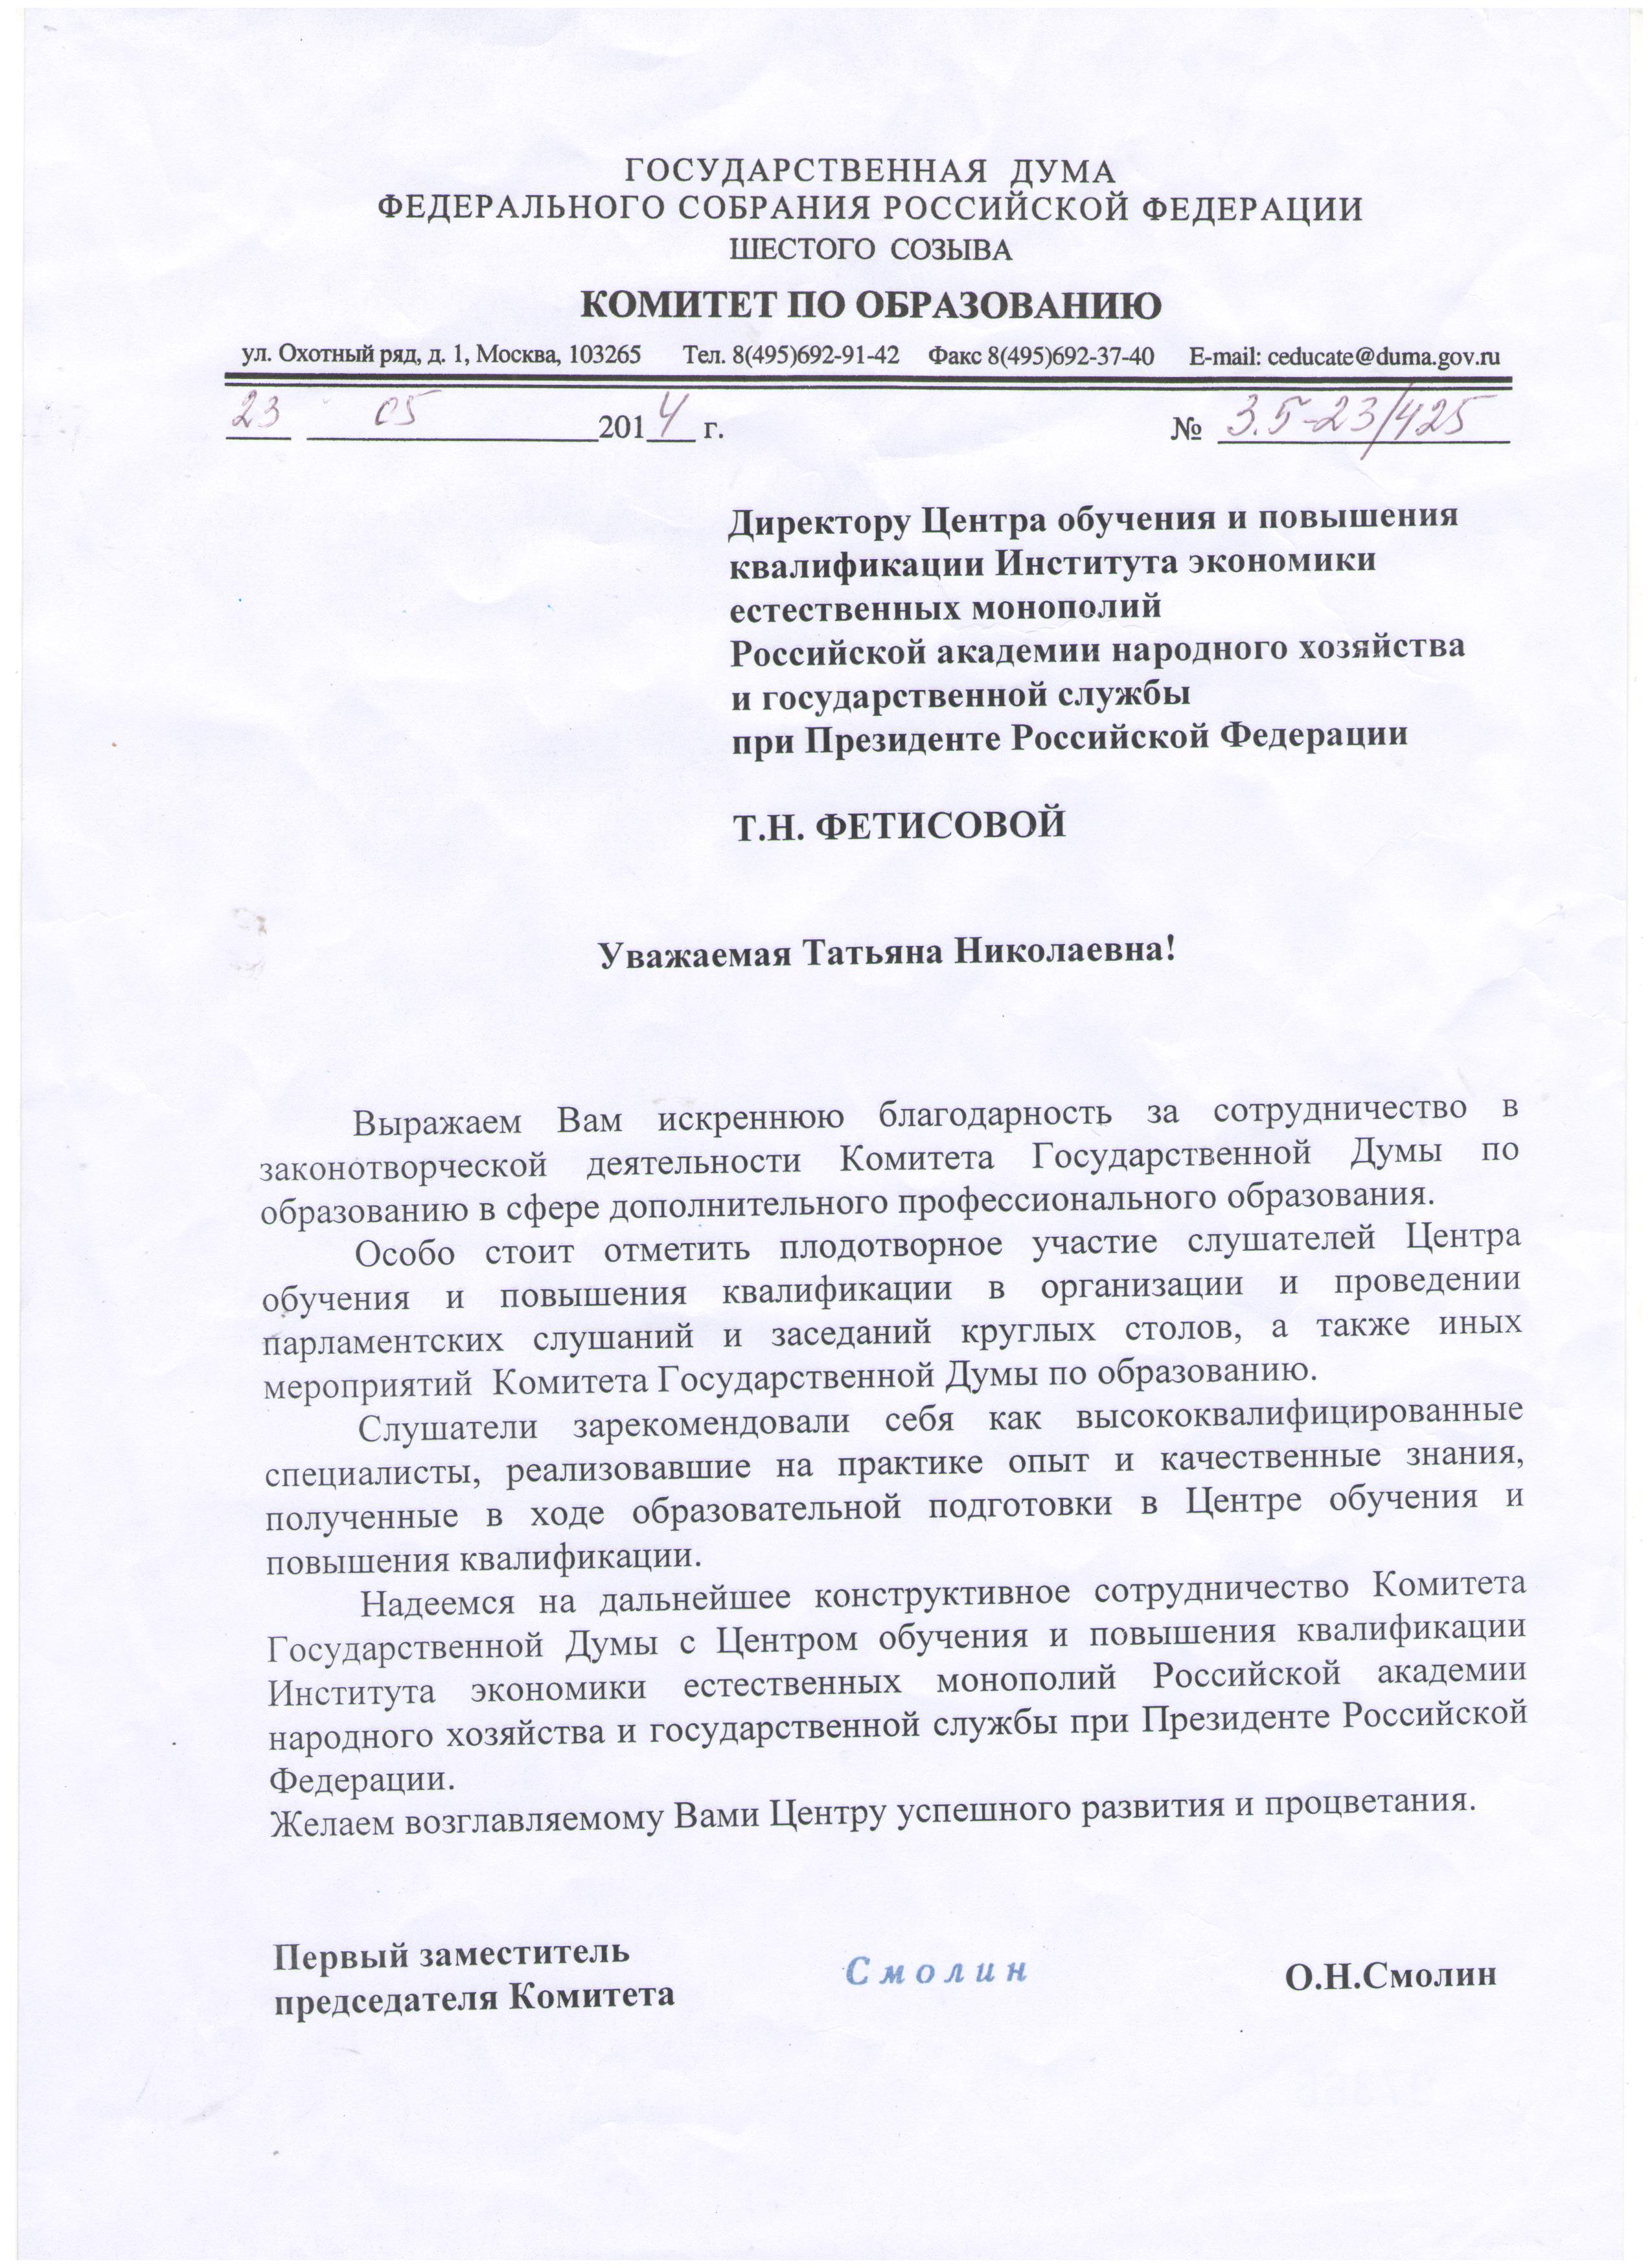 Комитет по образованию Государственной Думы Федерального собрания Российской Федерации